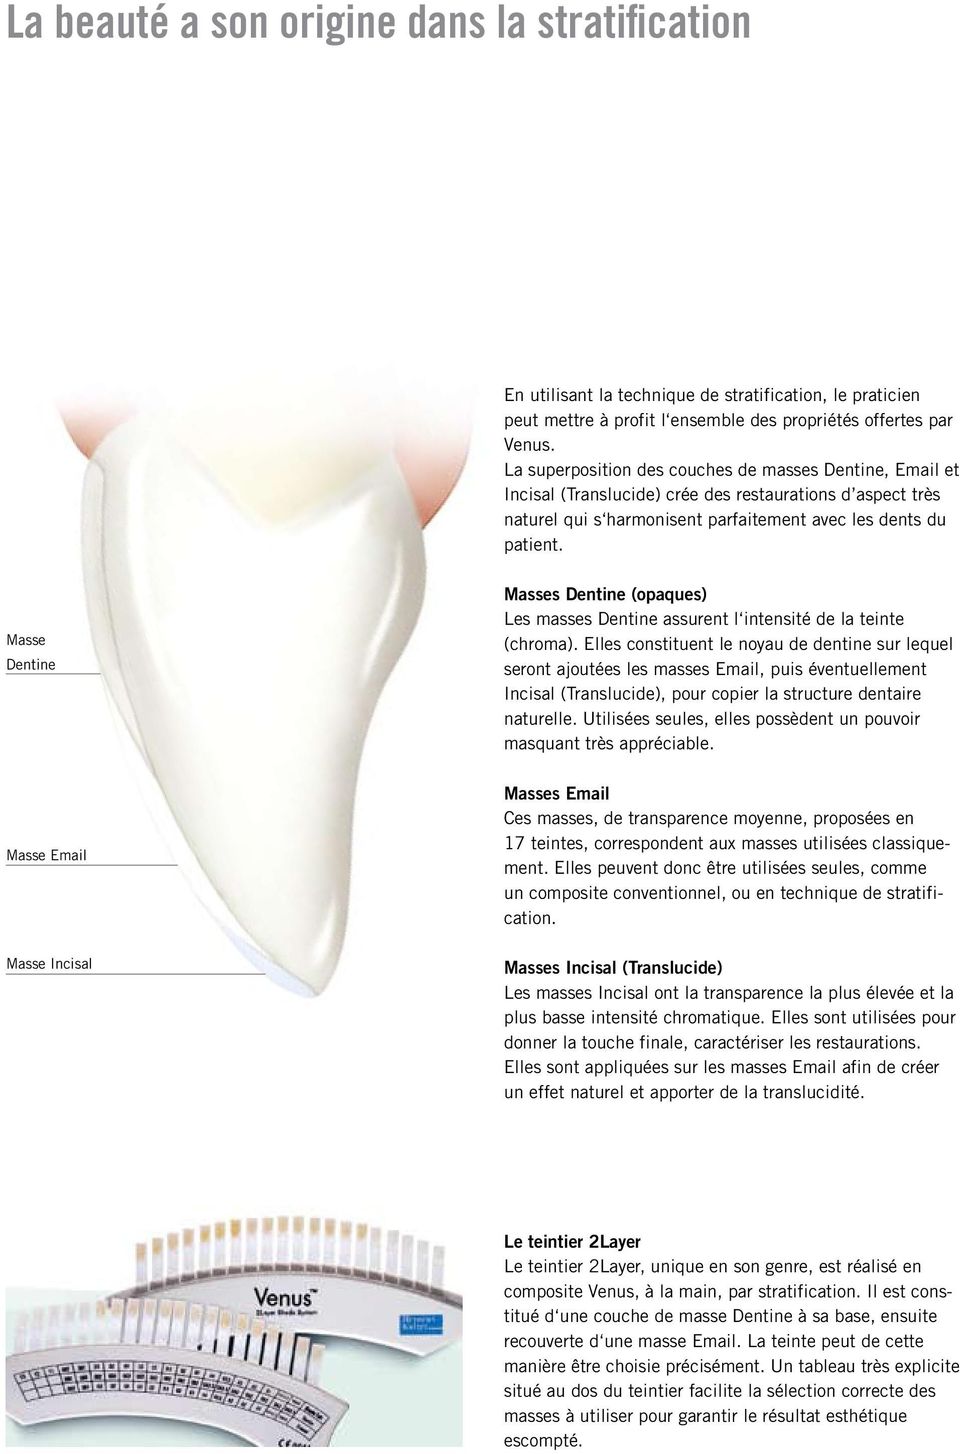 Masse Dentine Masses Dentine (opaques) Les masses Dentine assurent l intensité de la teinte (chroma).